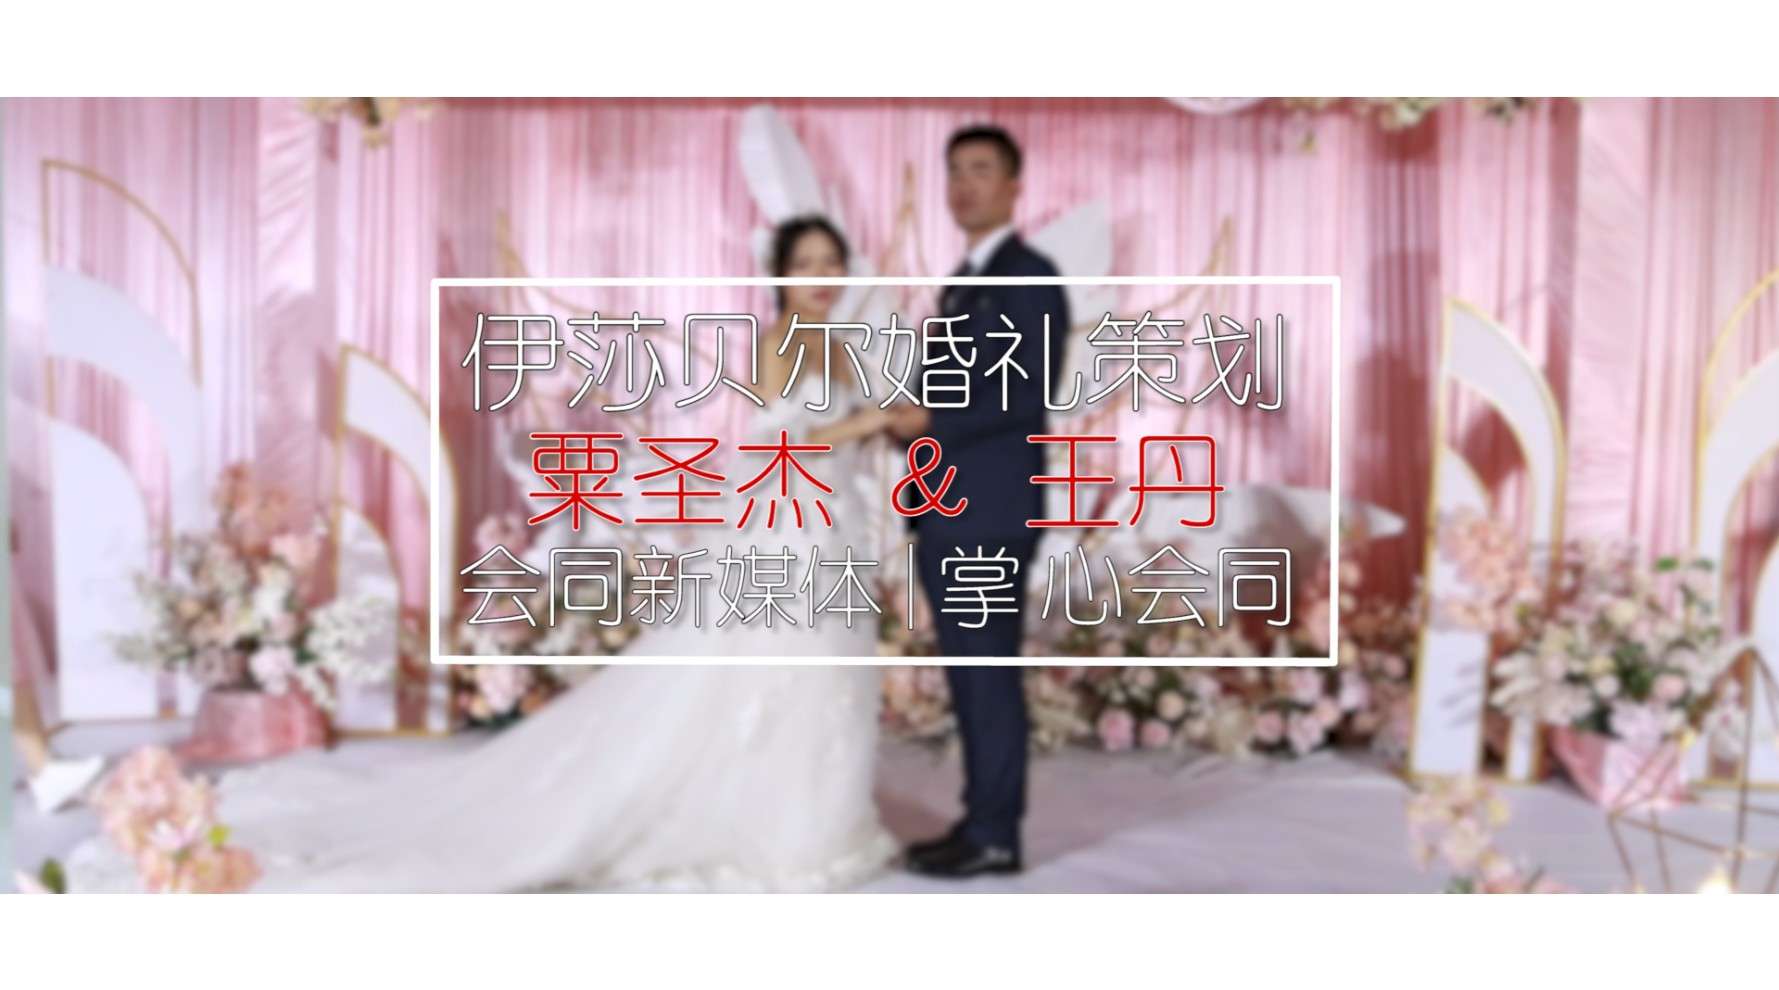 粟圣杰&王丹 2020.10.5婚礼预告MV